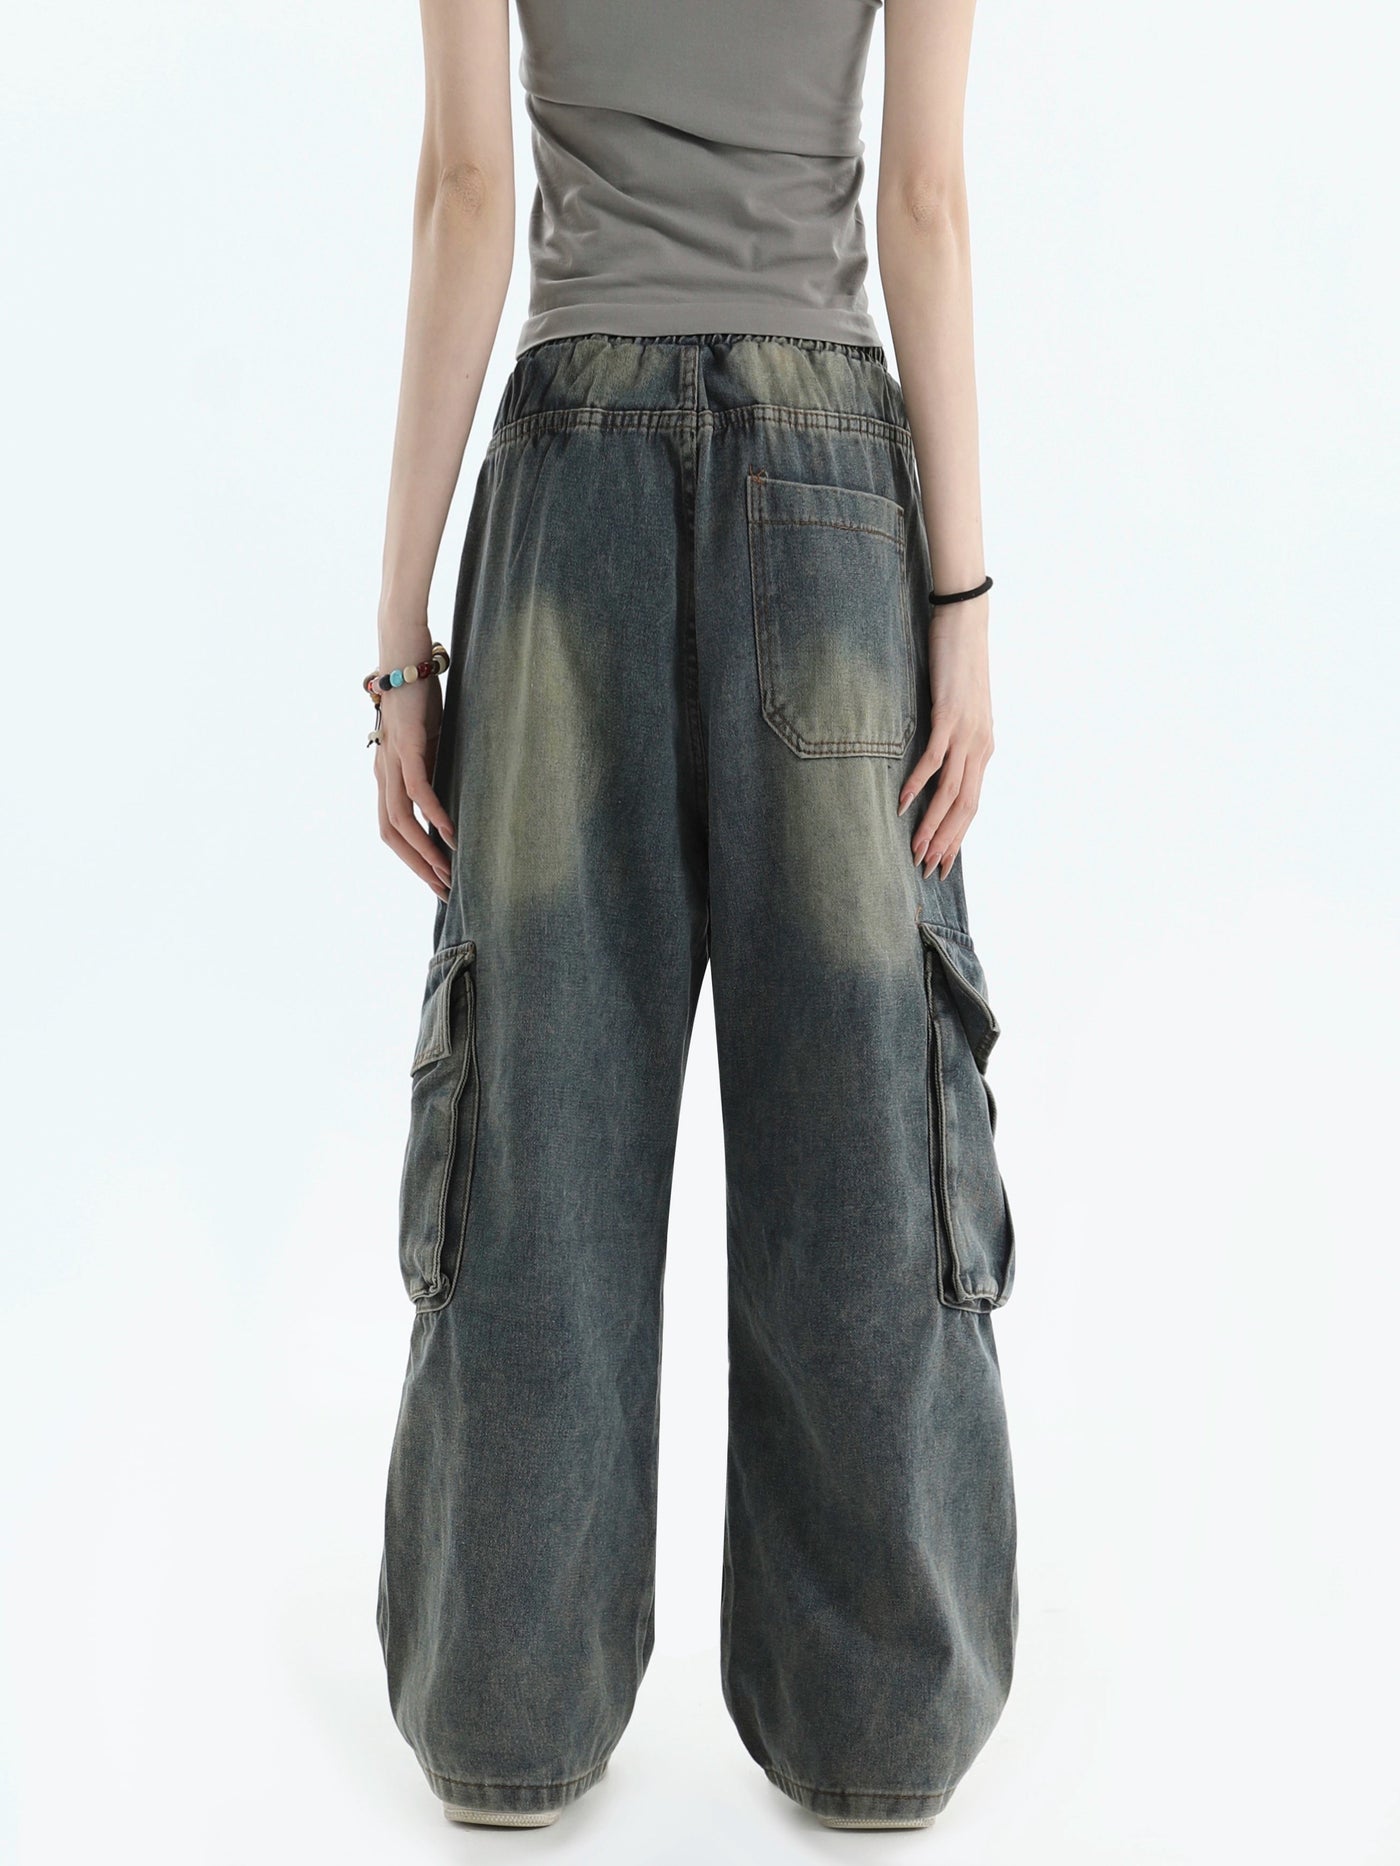 Gartered Multi-Details Jeans Korean Street Fashion Jeans By INS Korea Shop Online at OH Vault